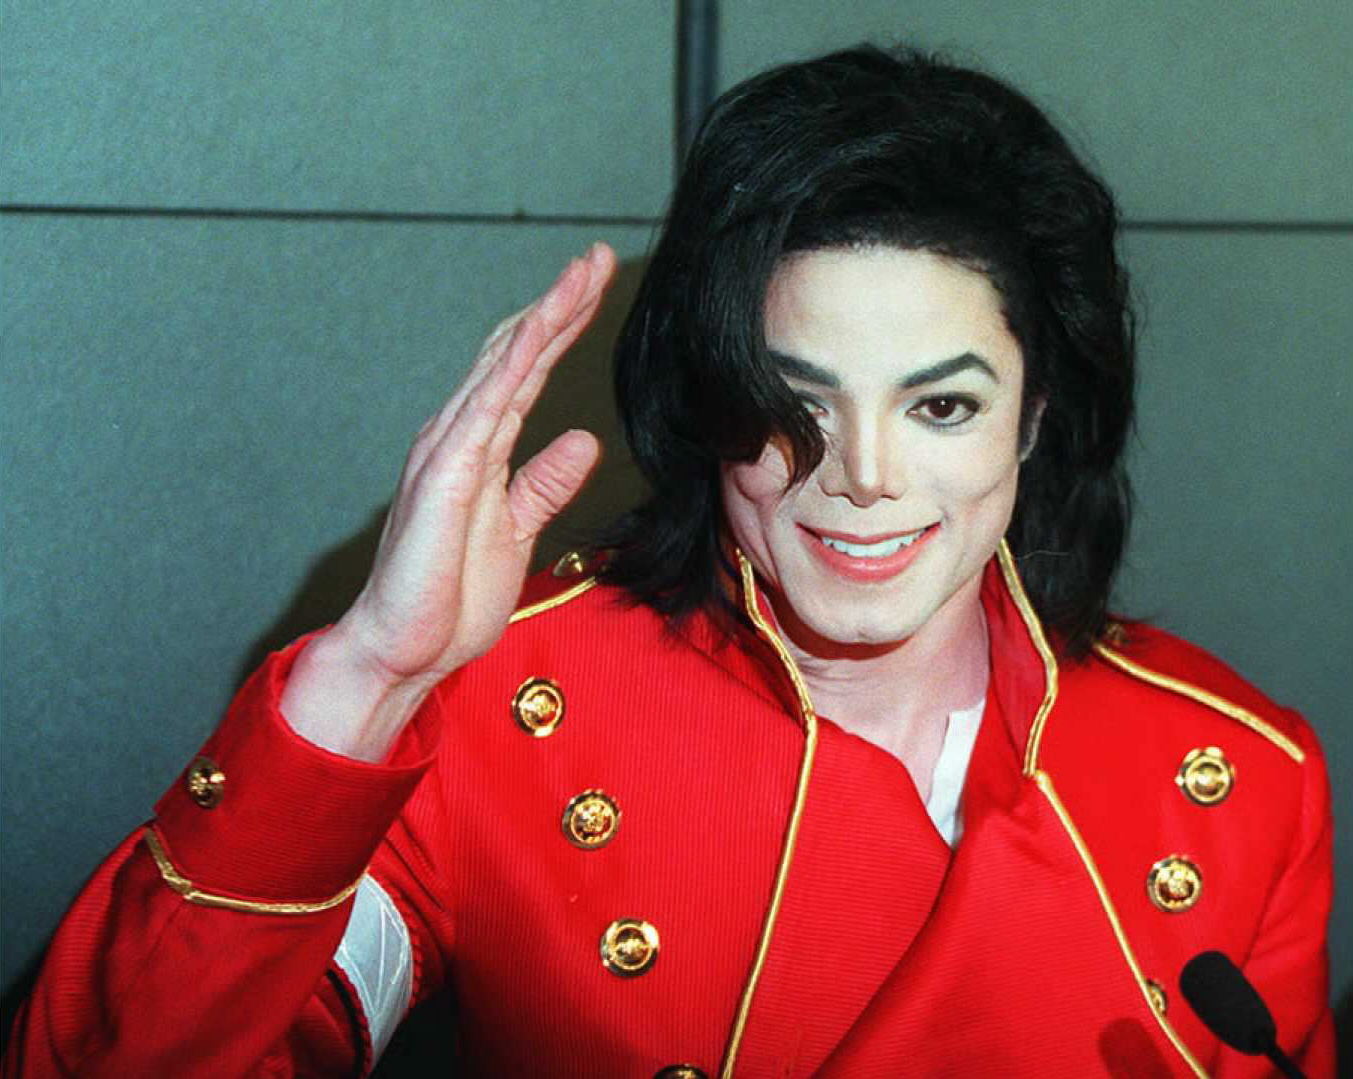 Michael Jackson, el rey del pop, falleció el 25 de junio de 2009 y dejó un legado musical. (Foto Prensa Libre: AFP)